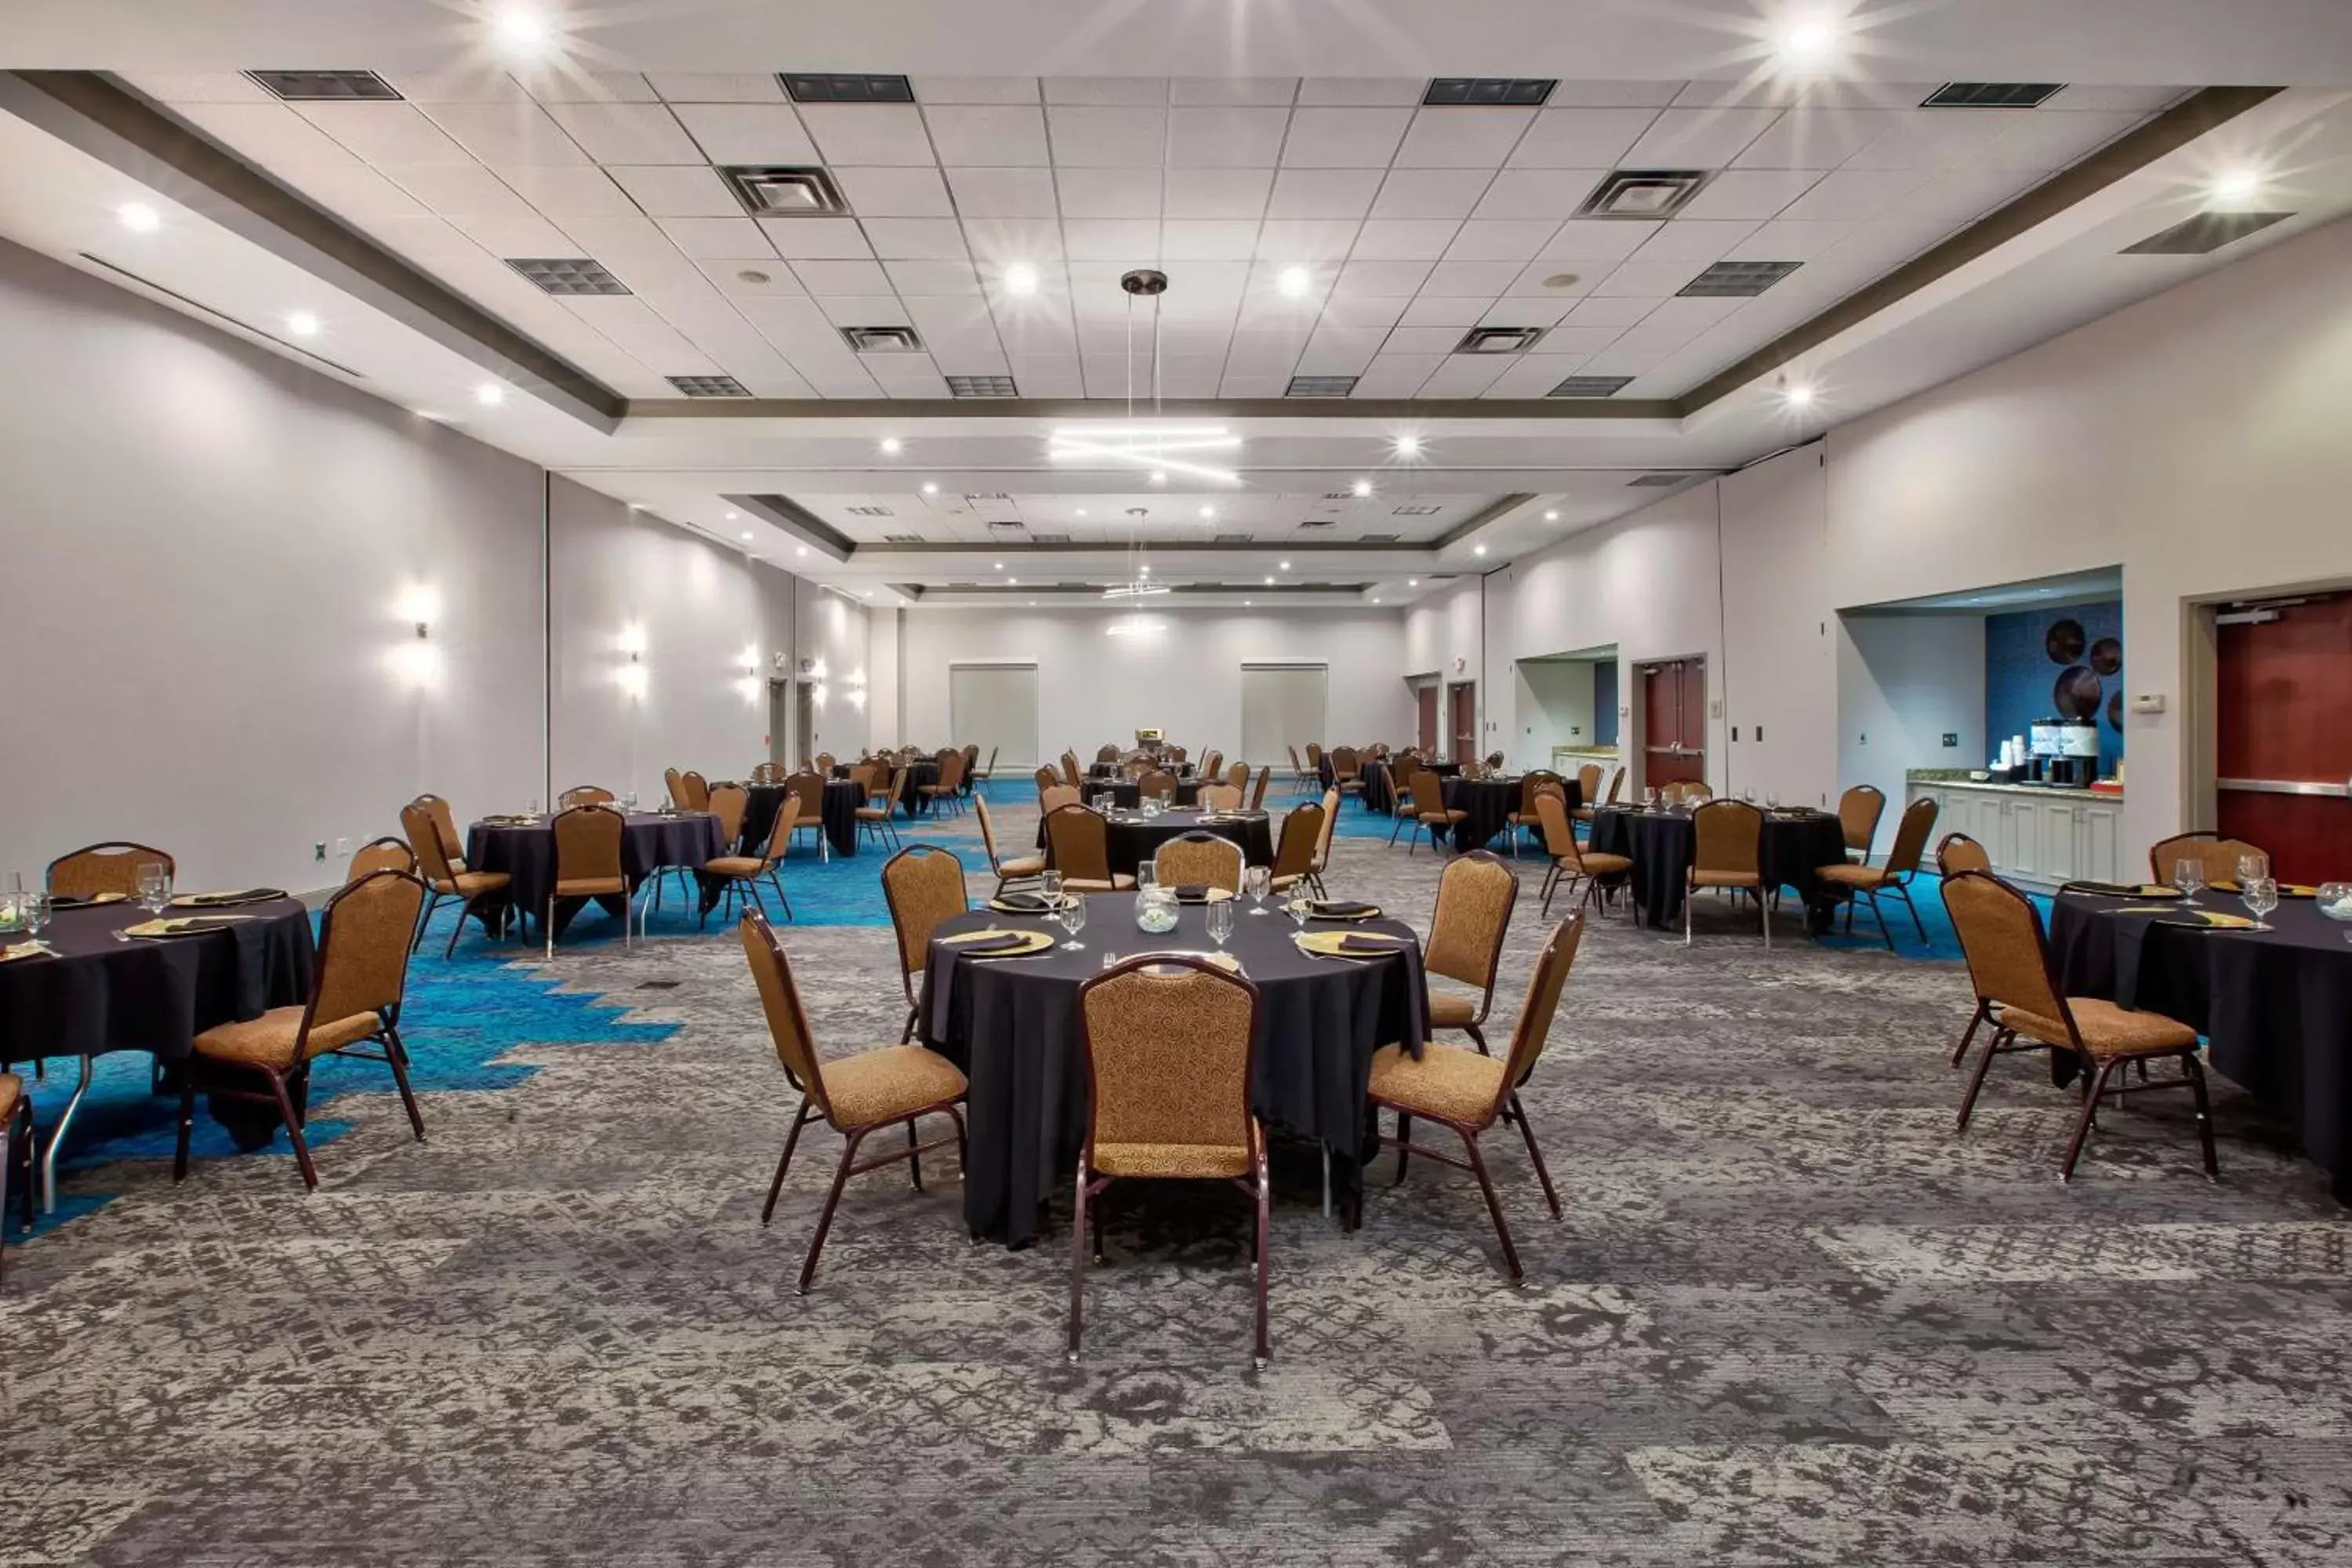 Meeting/conference room, Restaurant/Places to Eat in Hilton Garden Inn Dayton/ Beavercreek